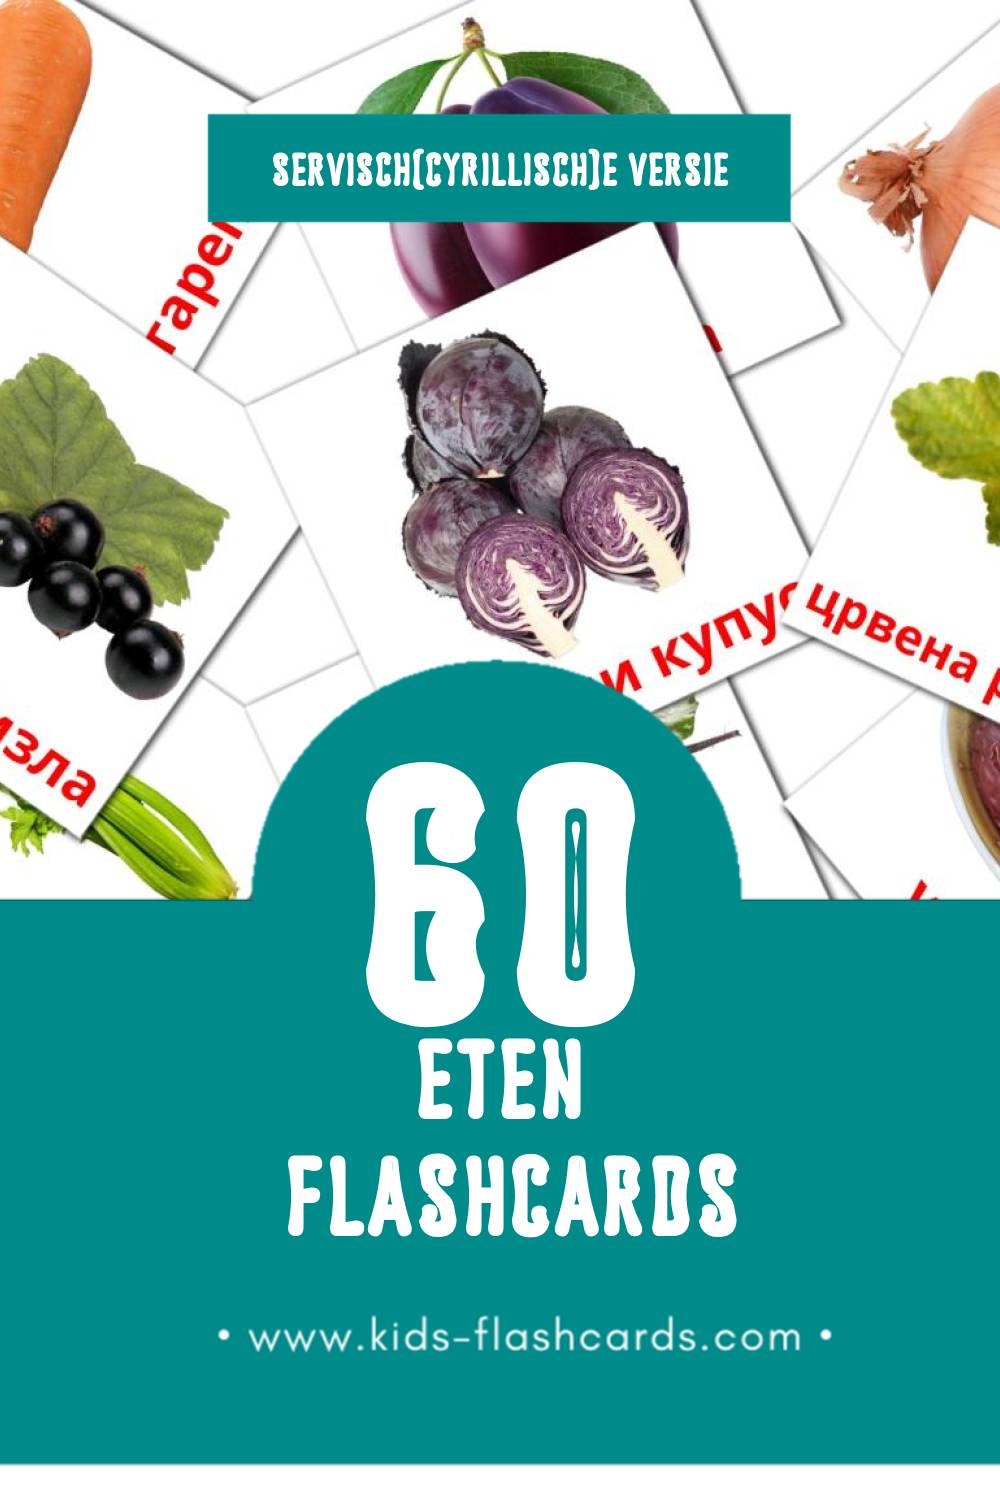 Visuele Храна Flashcards voor Kleuters (60 kaarten in het Servisch(cyrillisch))